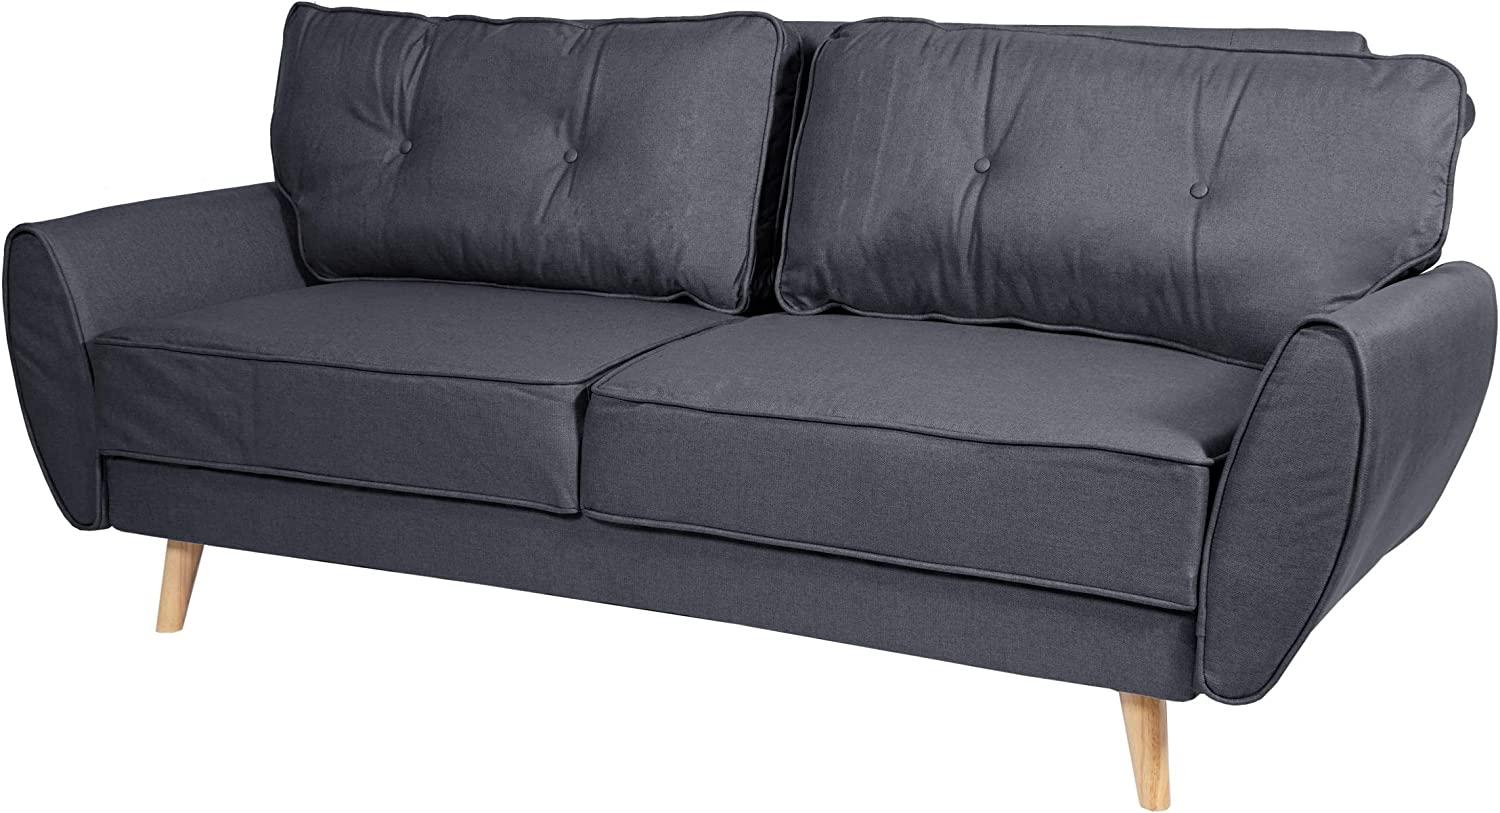 3er-Sofa HWC-J19, Couch Klappsofa Lounge-Sofa, Schlaffunktion 203cm ~ Stoff/Textil anthrazit Bild 1